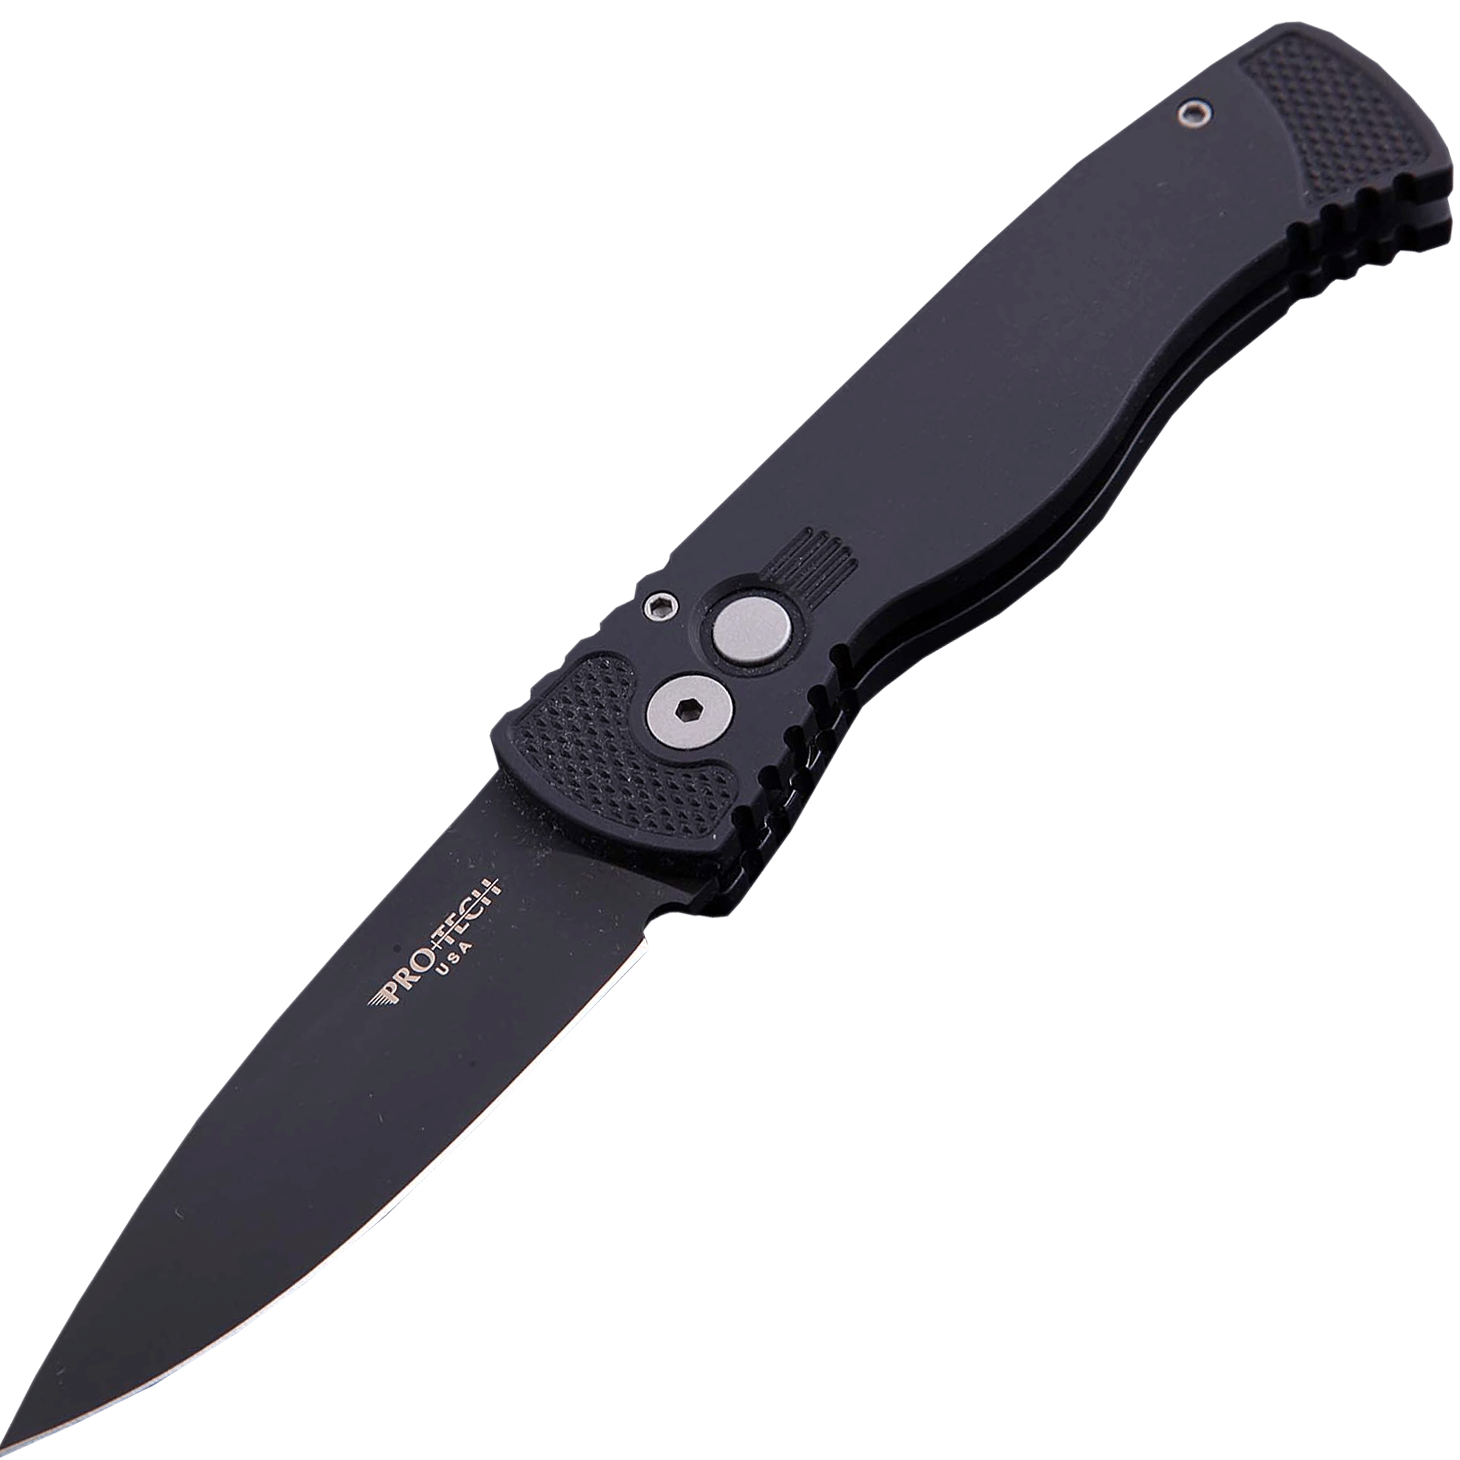 Автоматический складной нож Pro-Tech TR-2, клинок черный, сталь 154CM, рукоять алюминий - фото 1